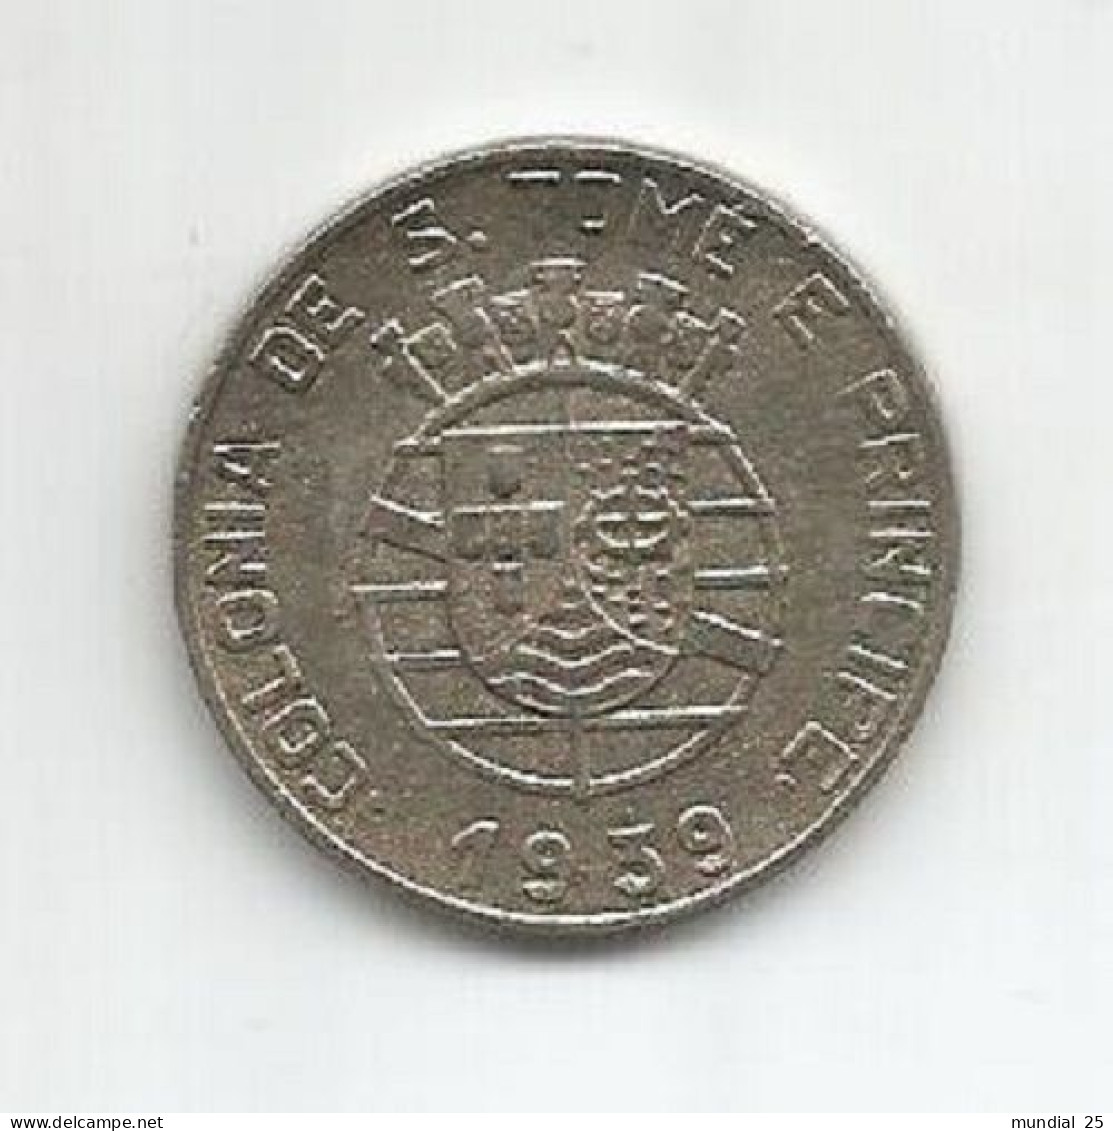 SAO TOME AND PRINCIPE PORTUGAL 1$00 ESCUDO 1939 - Sao Tomé E Principe